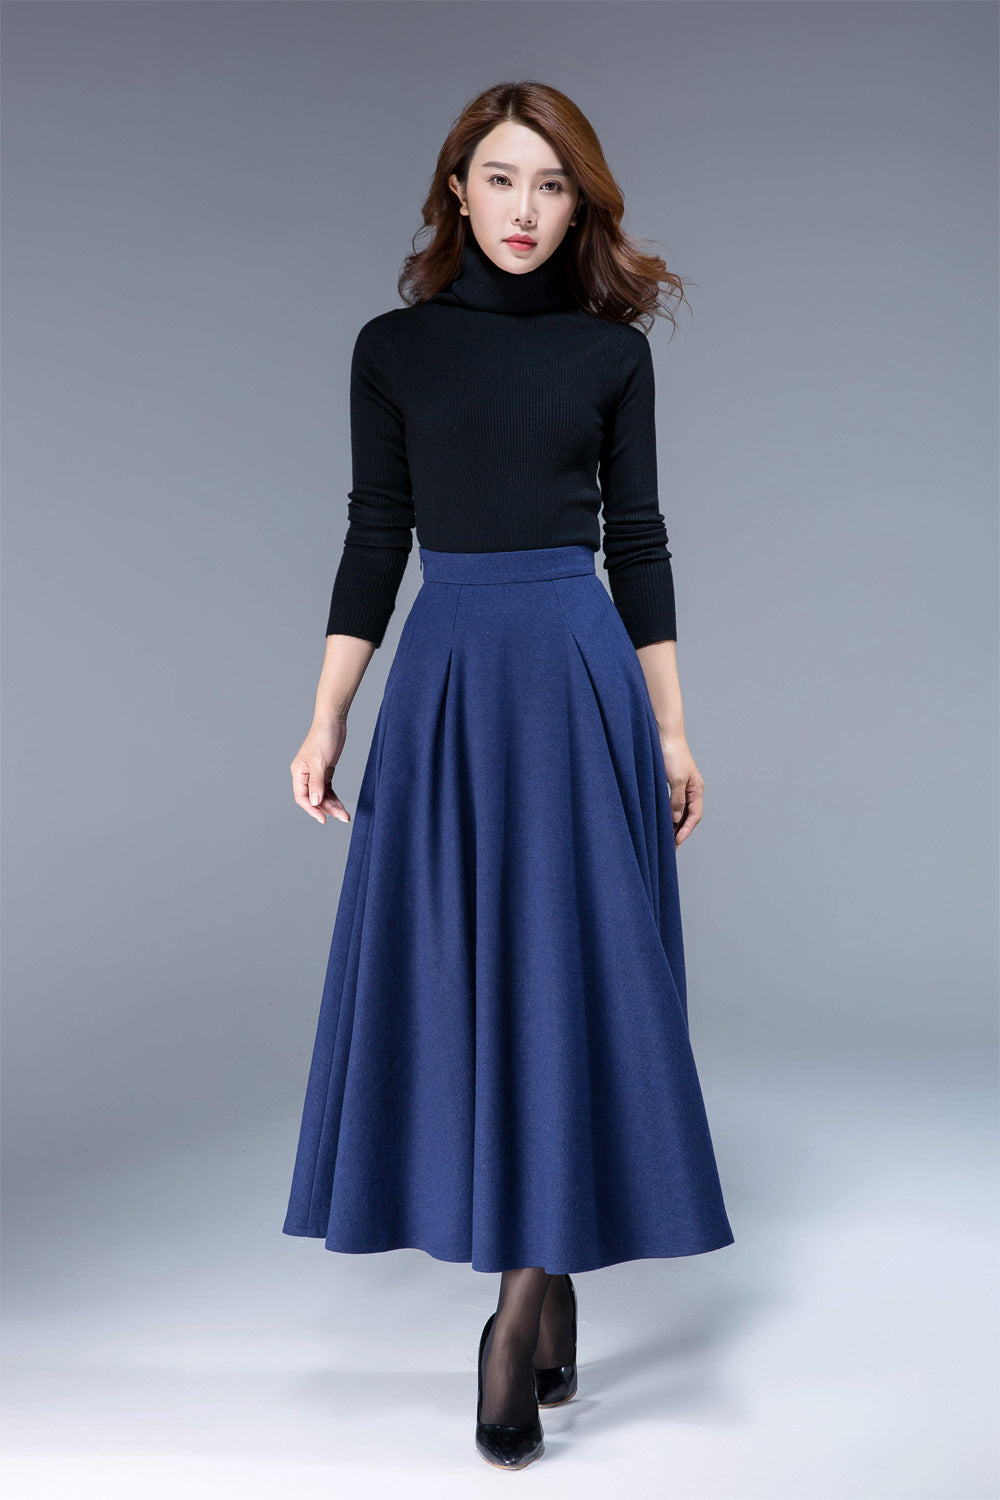 wool skirt,winter skirt, maxi skirt, pleated skirt, pockets skirt 1806 –  XiaoLizi